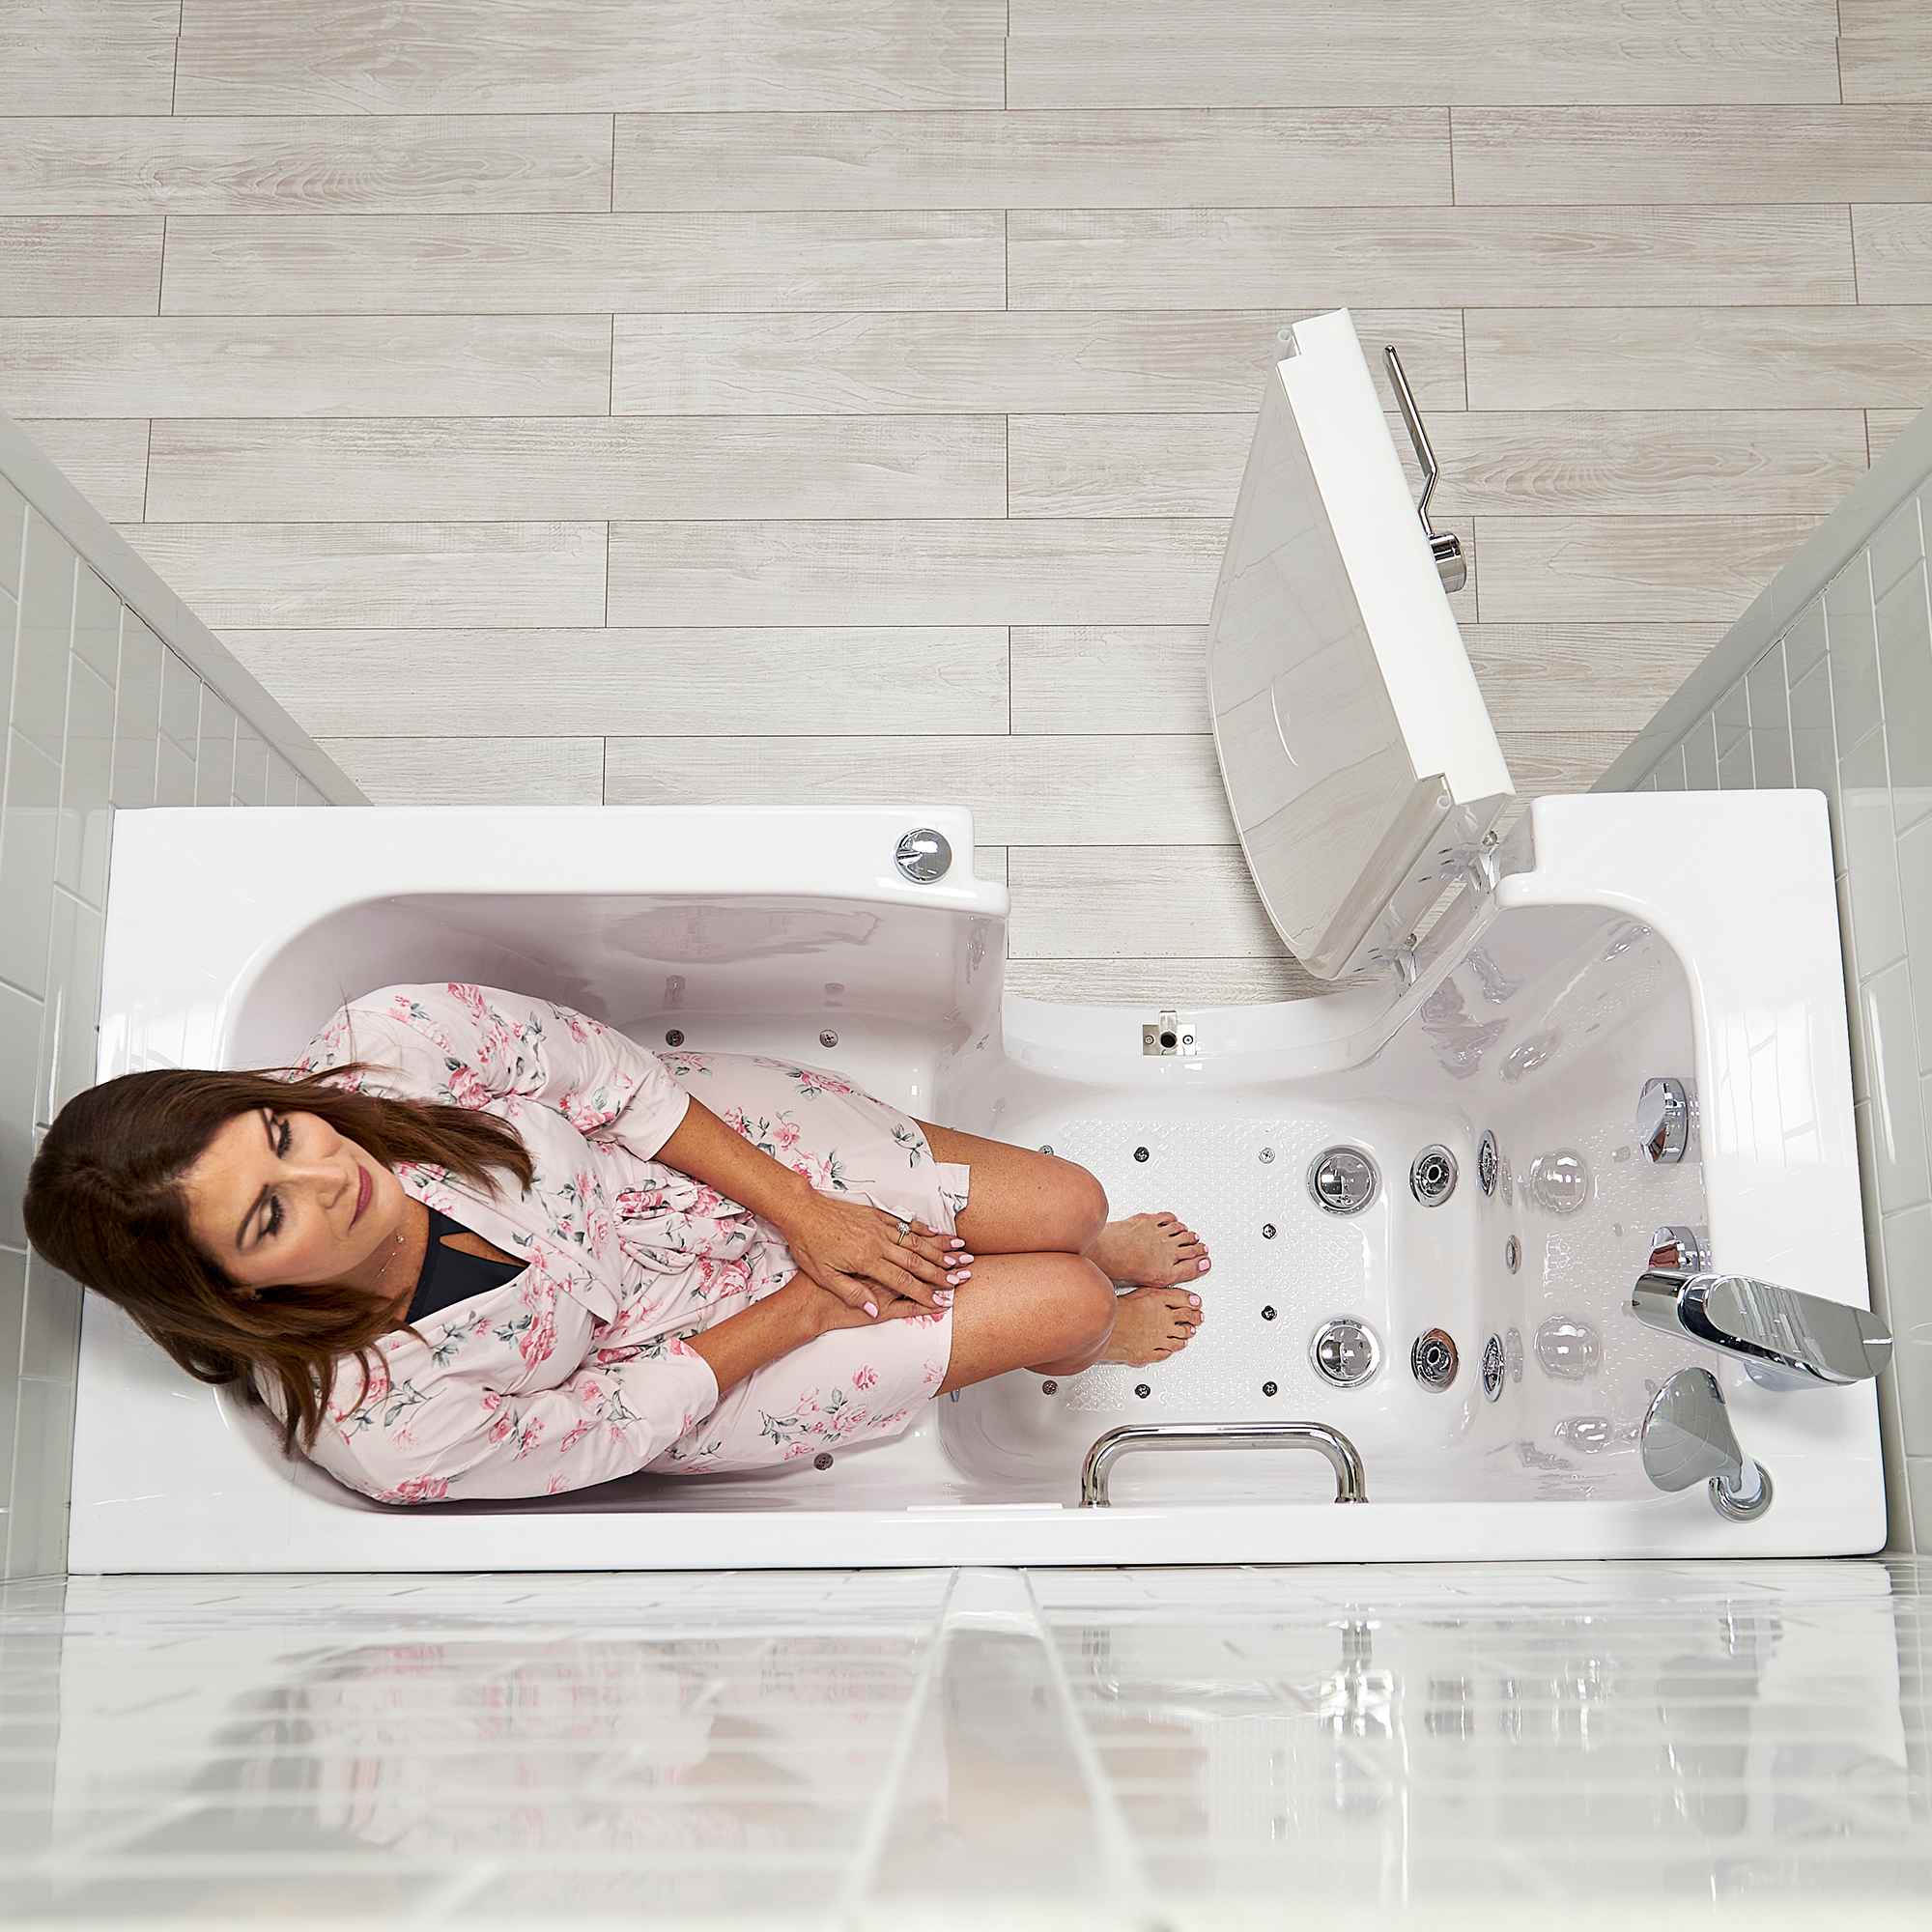 Ella Lounger 27"x60" Acrylic Air and Hydro Massage Walk-In Bathtub with Outward Swing Door, 2 Piece Fast Fill Faucet, 2" Dual Drain, Digital Controller Bath Tub Ella's Bubbles   